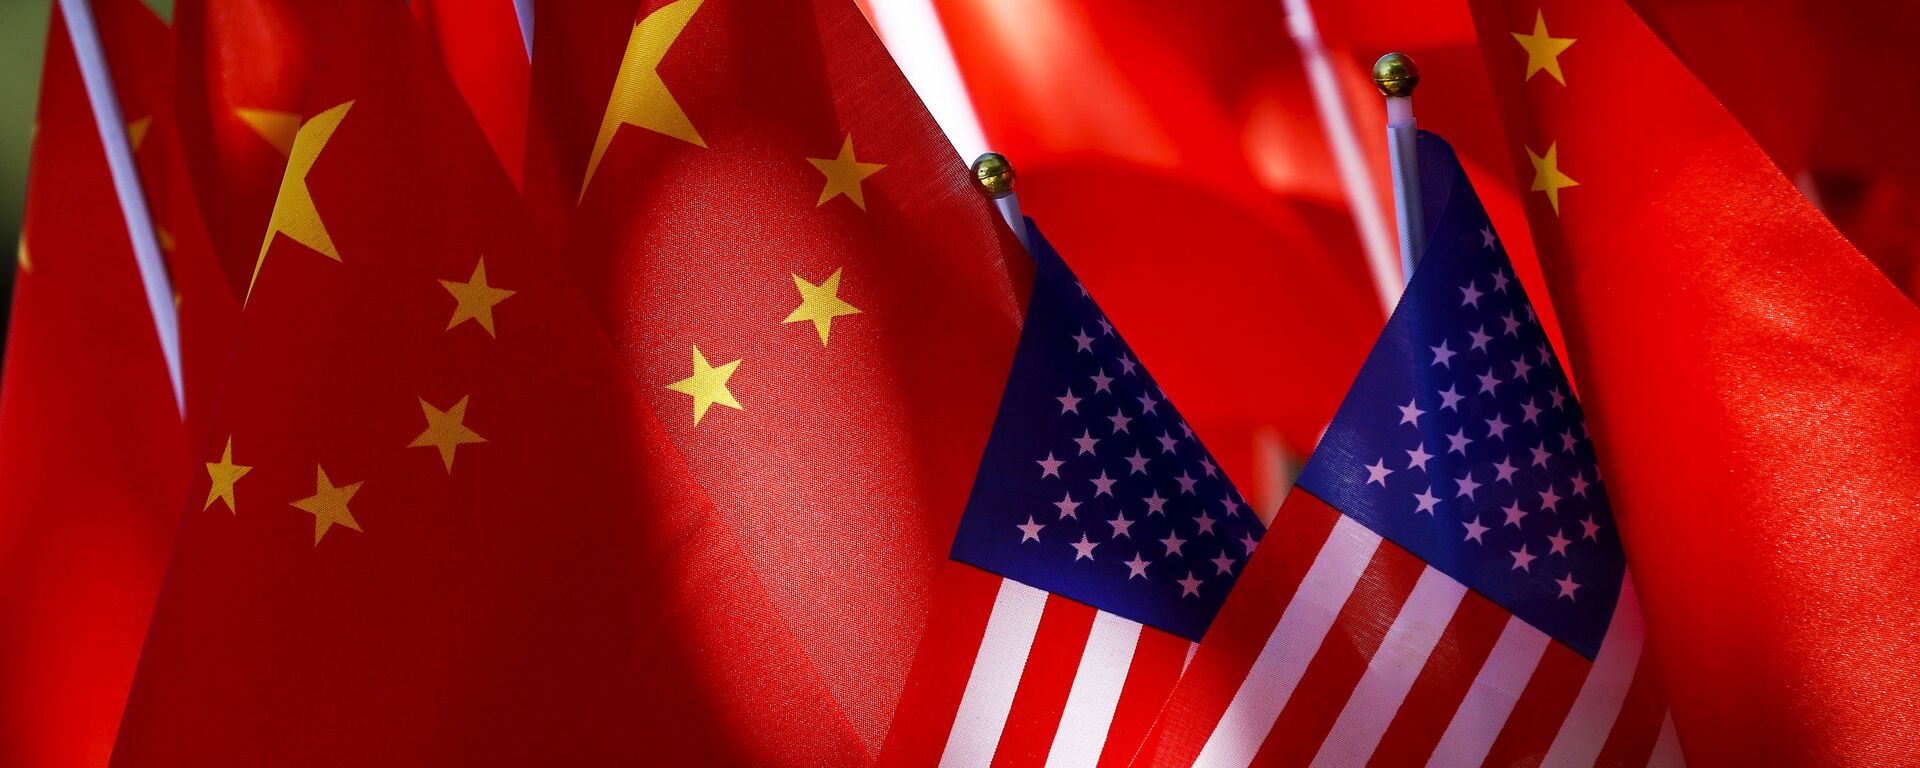 Banderas de EEUU y China - Sputnik Mundo, 1920, 07.06.2021